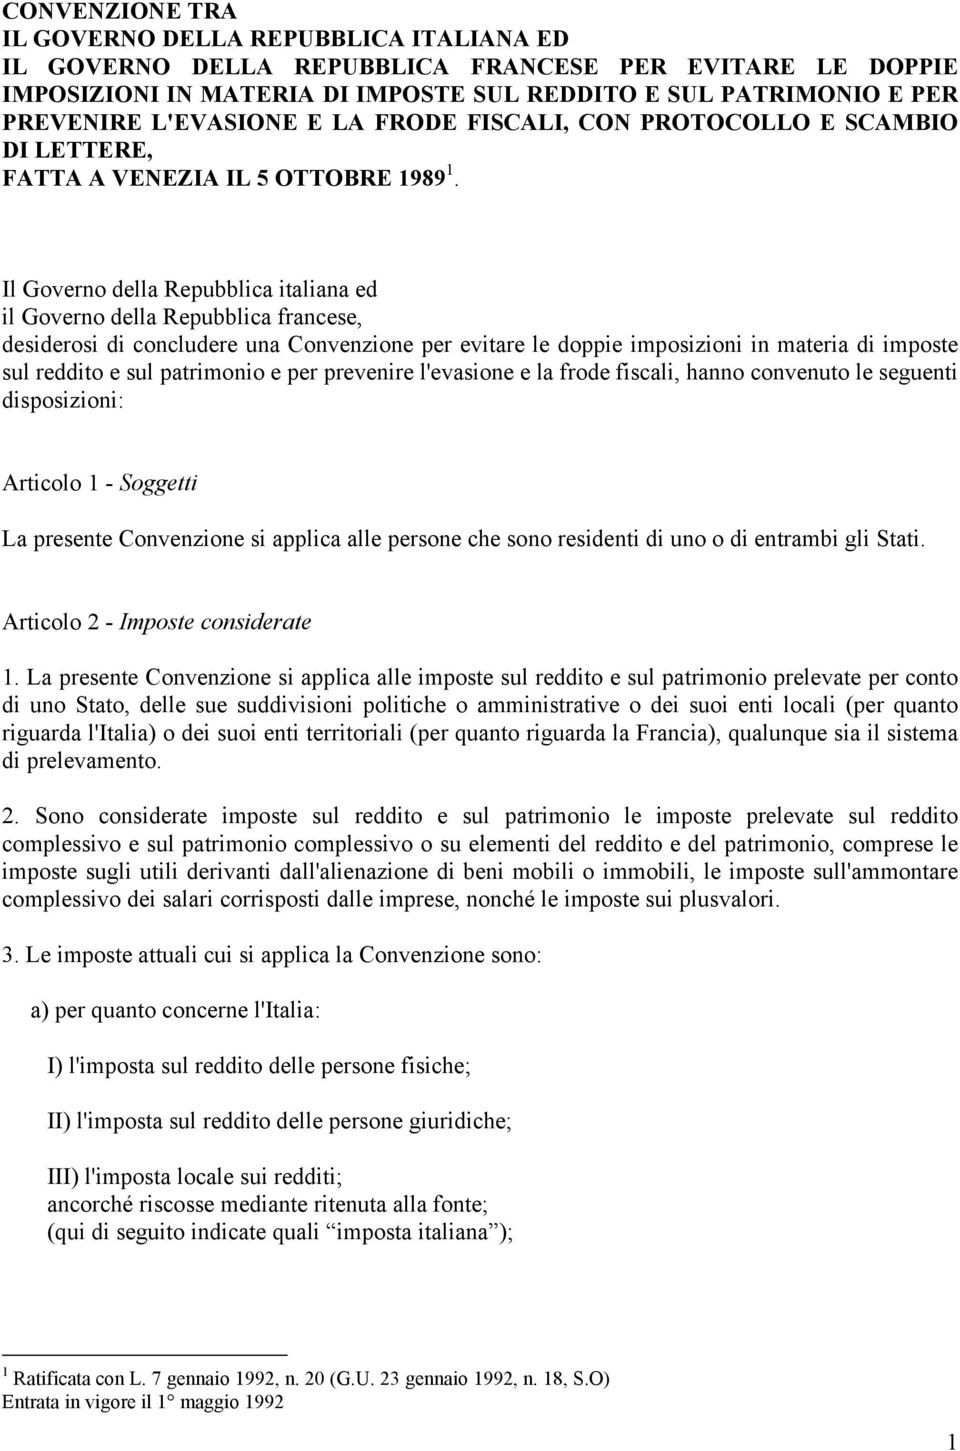 Il Governo della Repubblica italiana ed il Governo della Repubblica francese, desiderosi di concludere una Convenzione per evitare le doppie imposizioni in materia di imposte sul reddito e sul